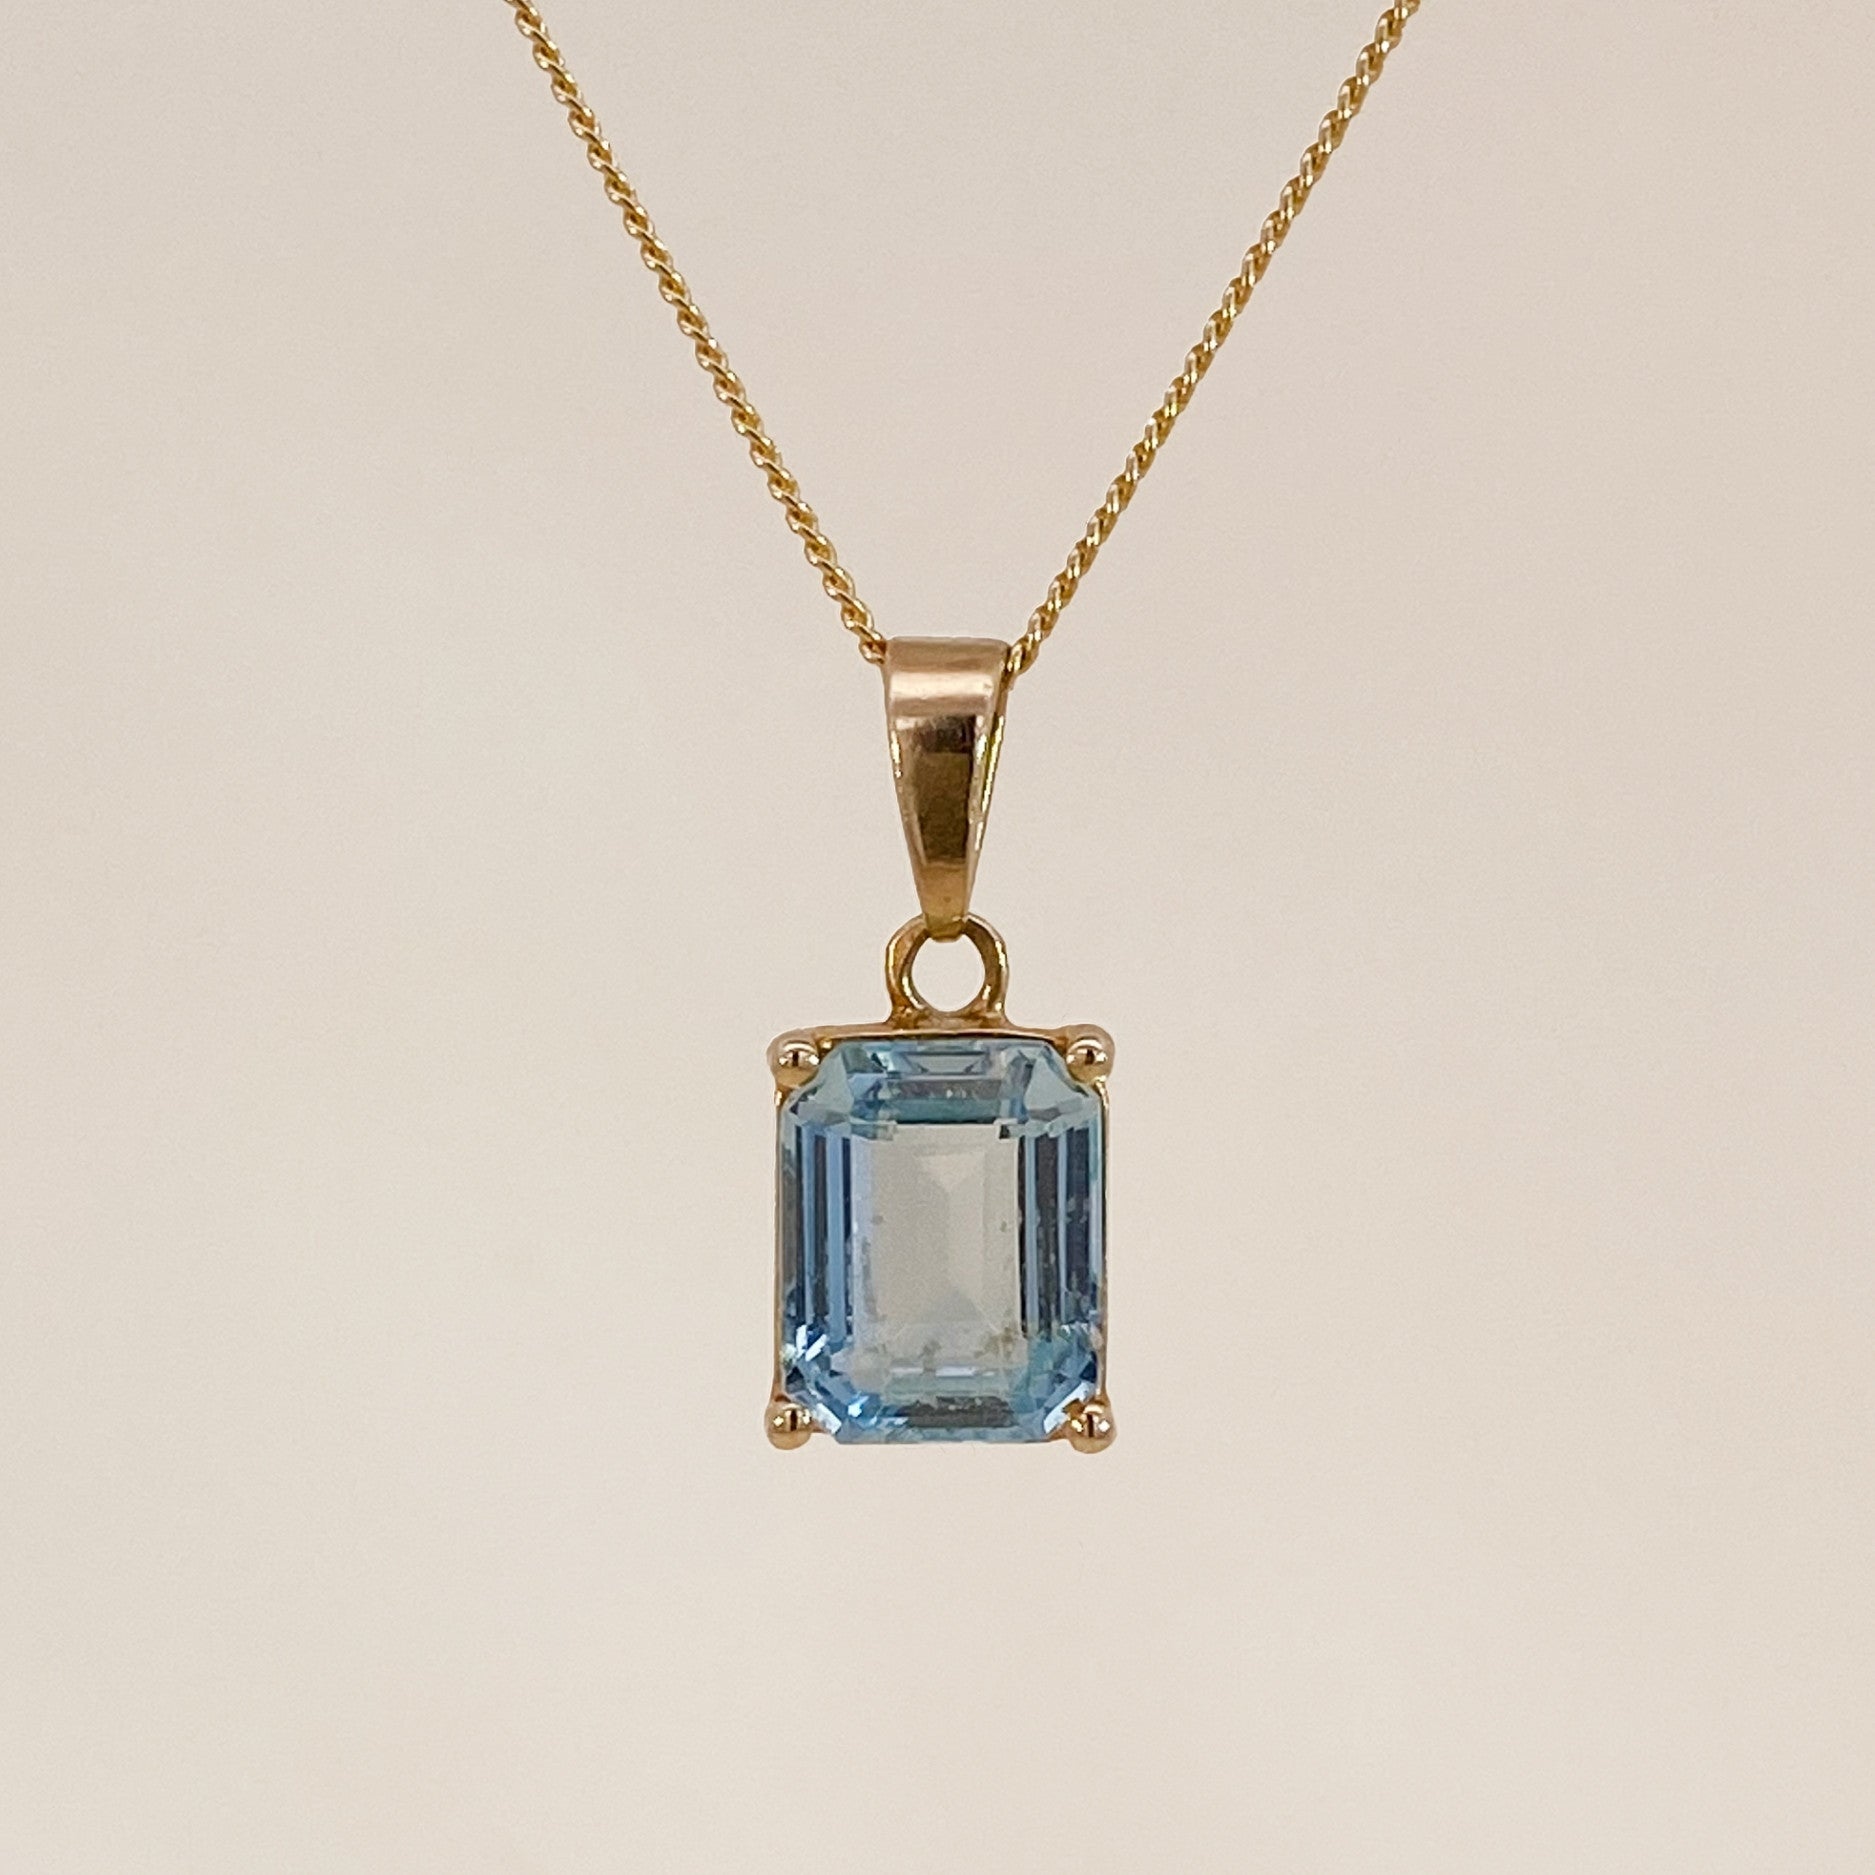 Vintage blue spinel pendant